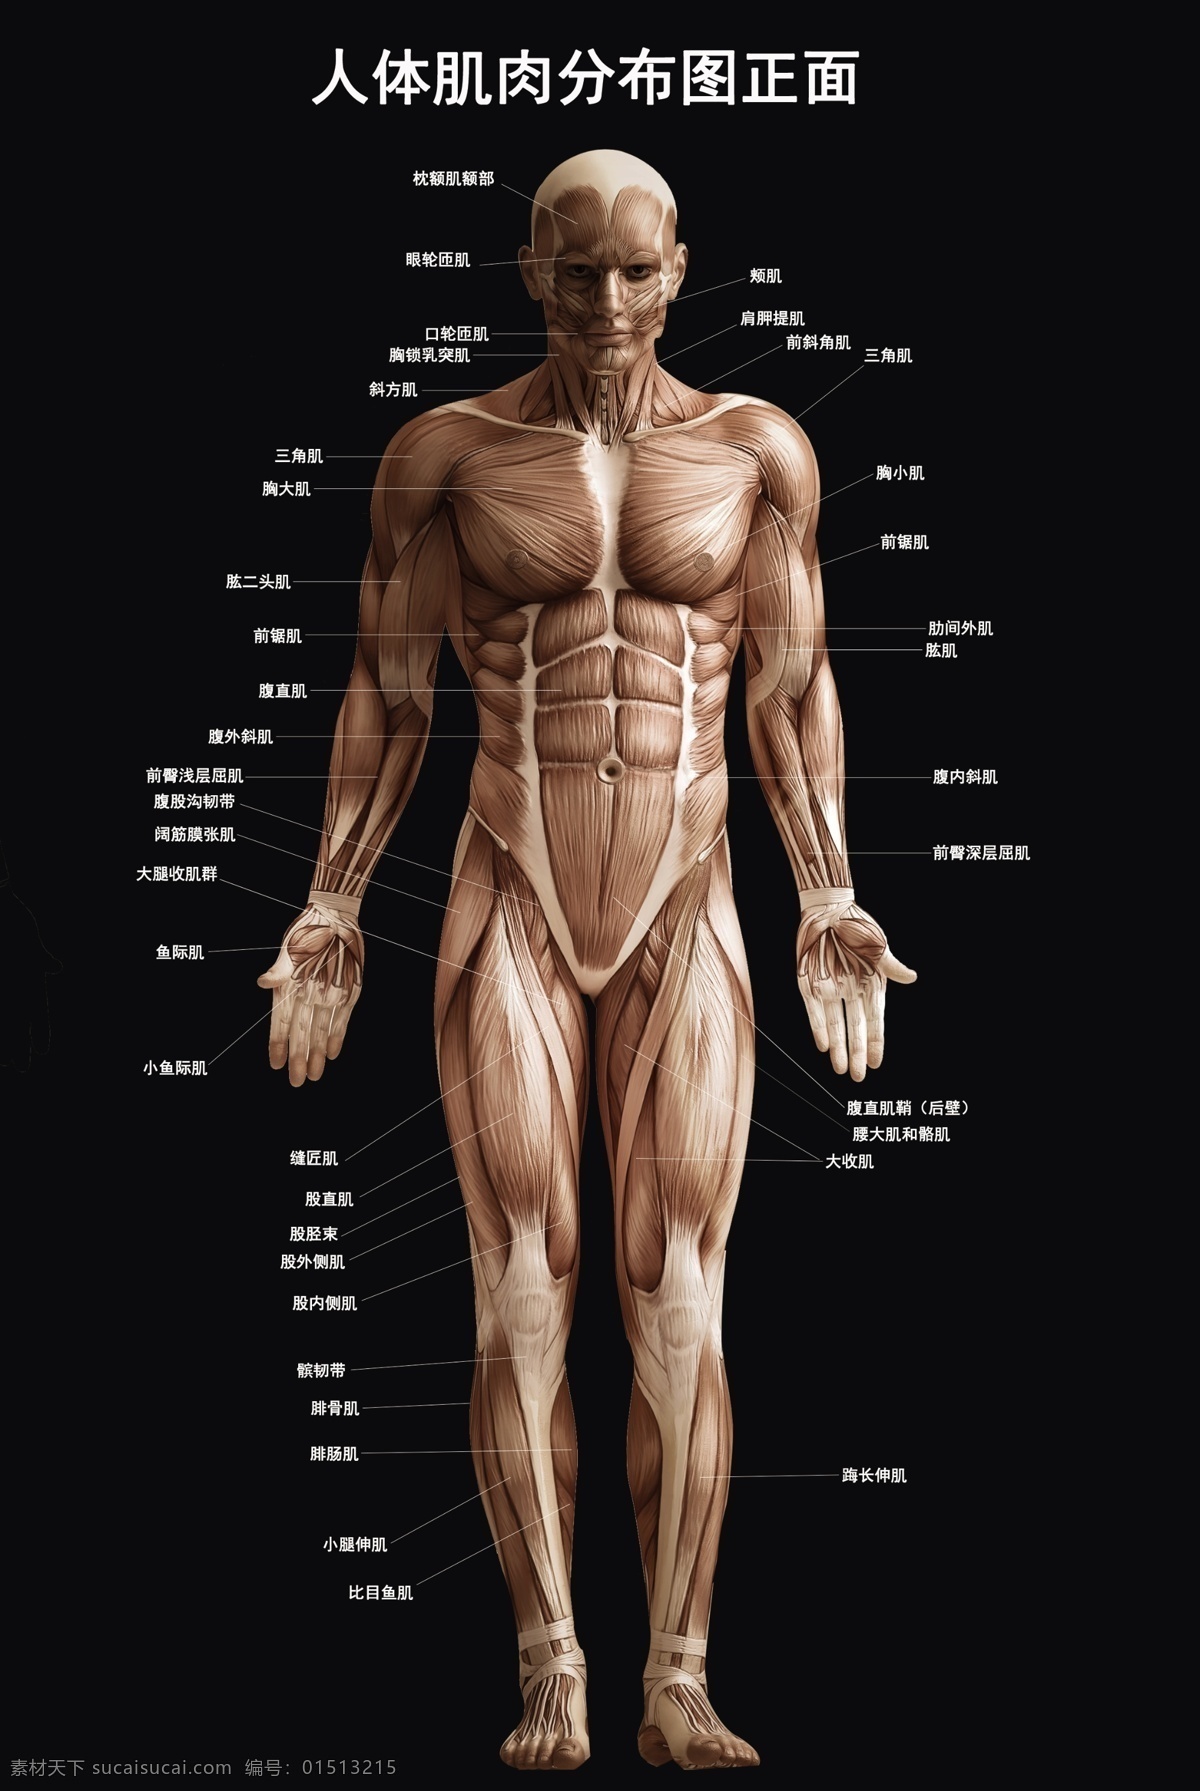 肌肉 分布图 黑色 修改 元素 健身房 产品实图